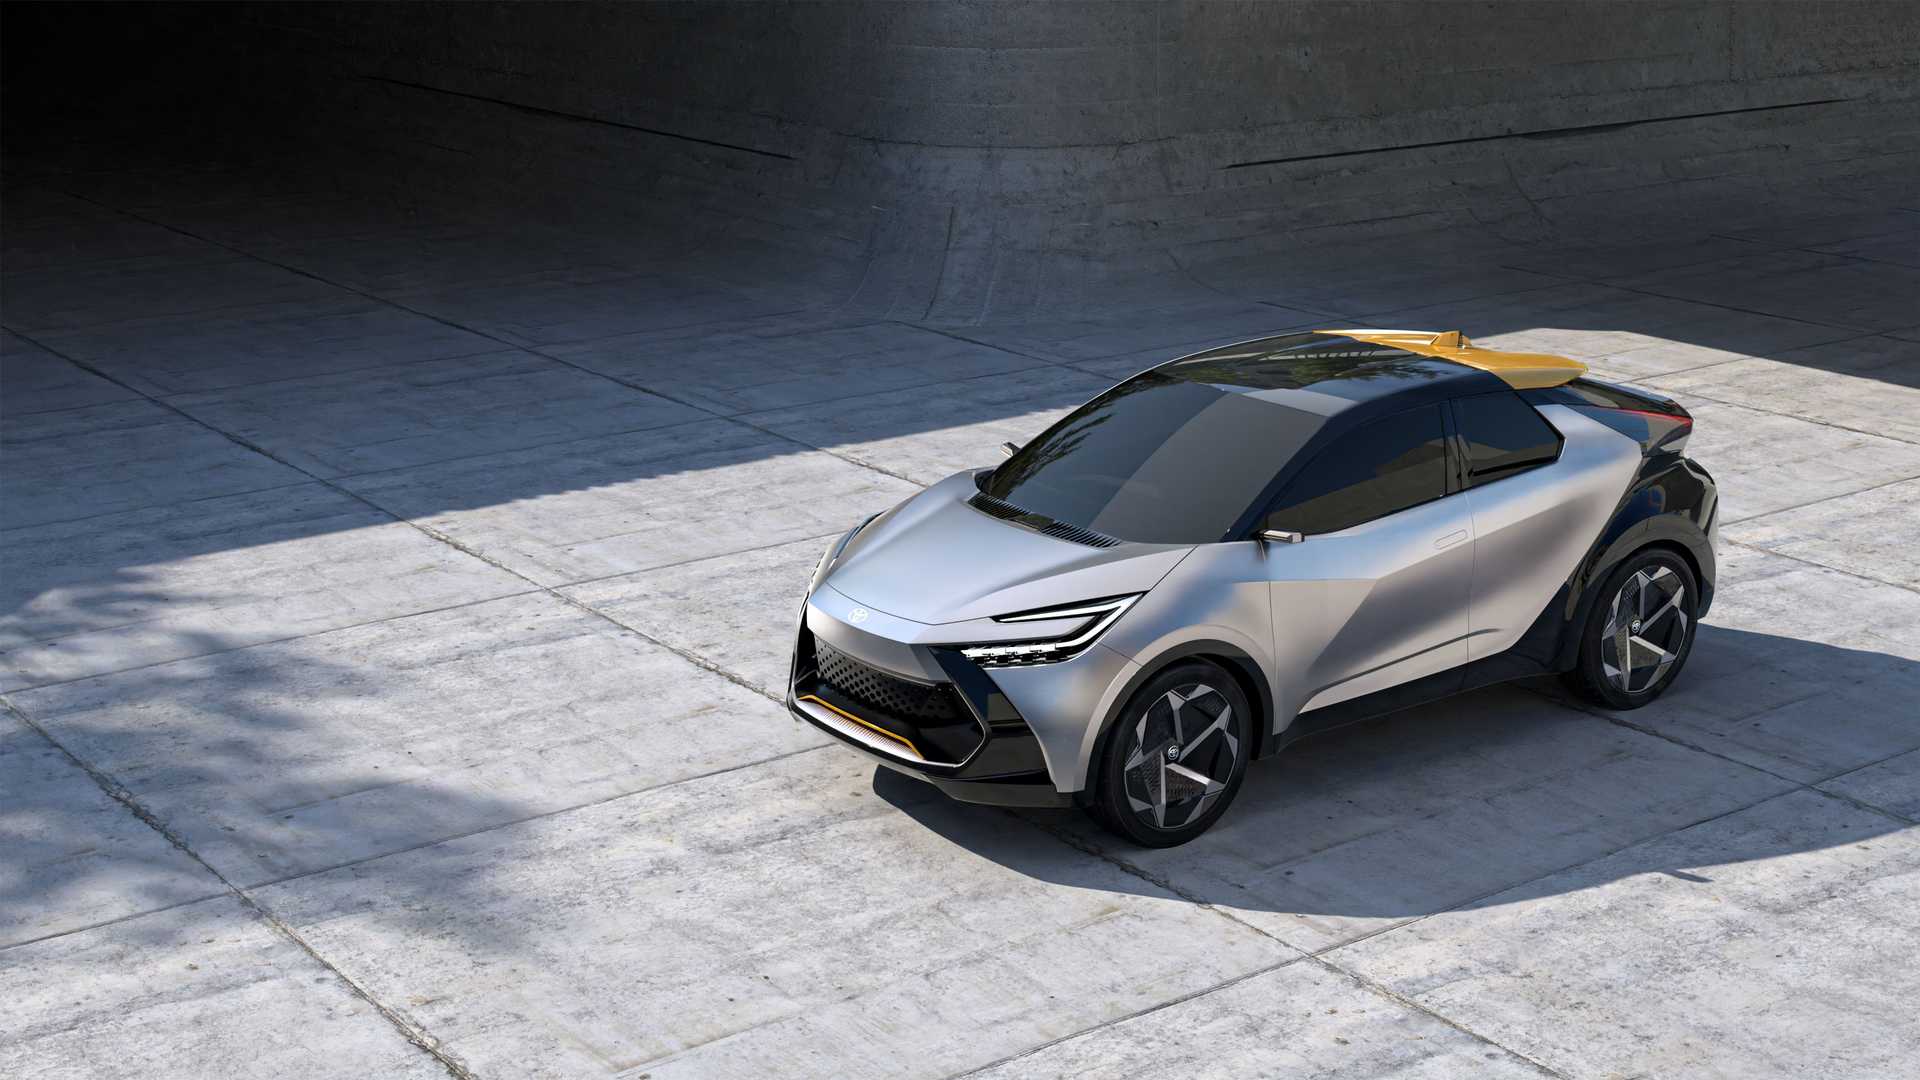 Yeni Toyota C-HR bu tasarımla geliyor! Üstelik bu kez PHEV versiyon da var